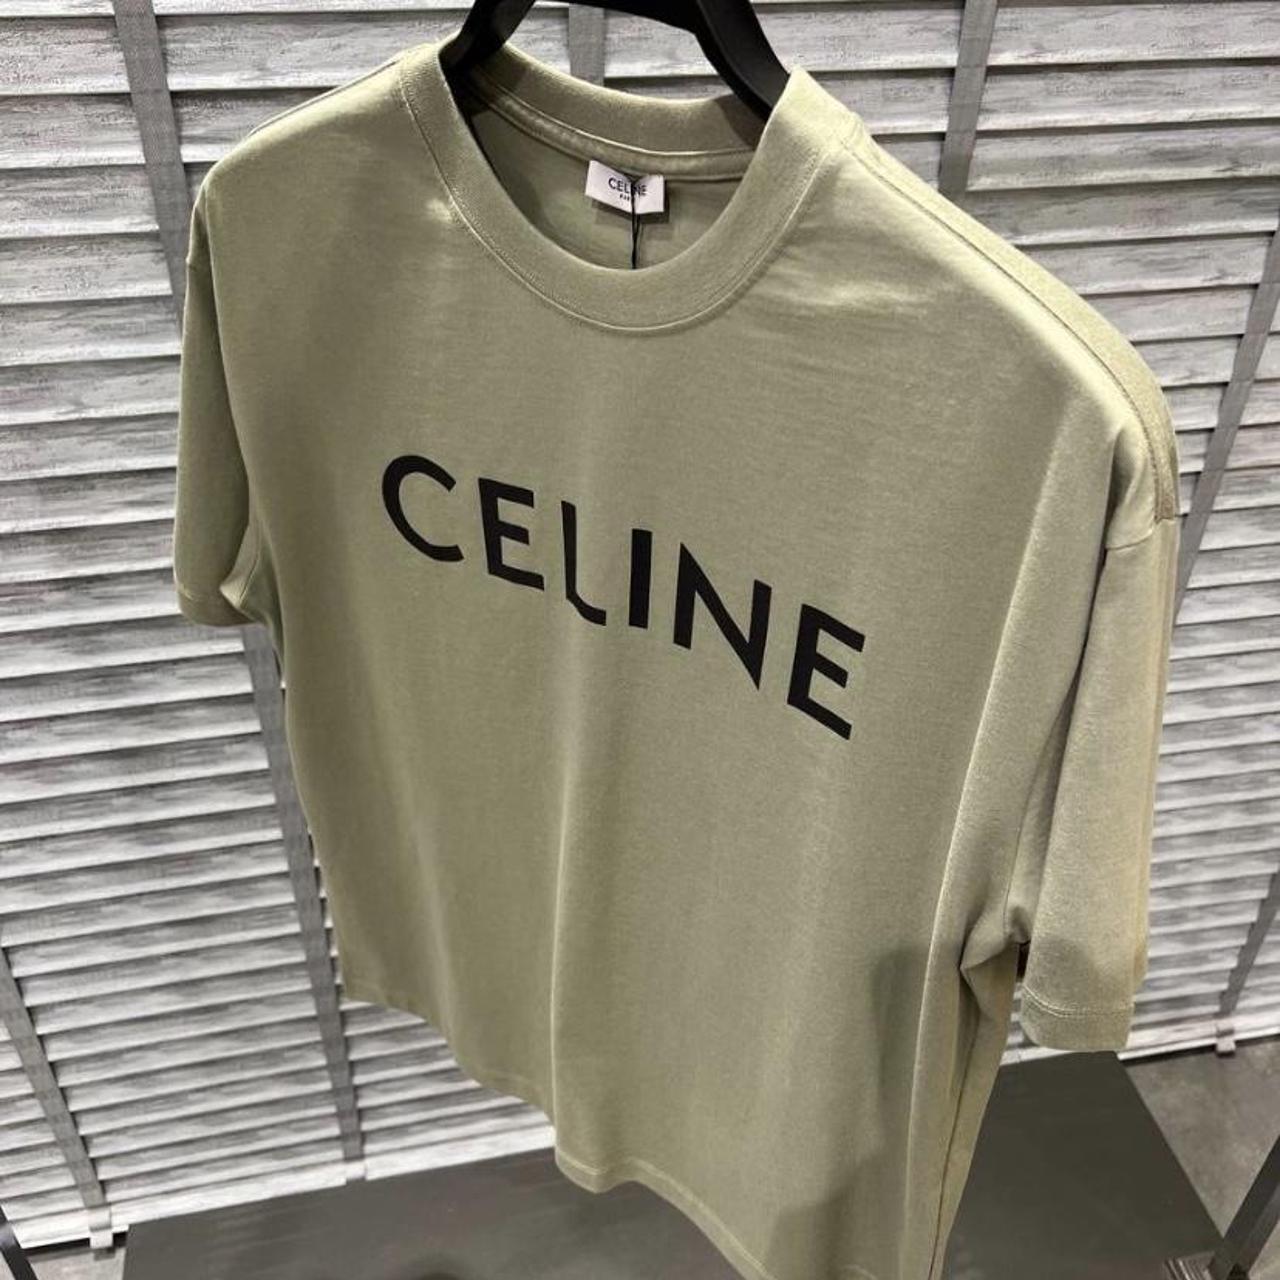 Celine Men's Regular T-Shirt